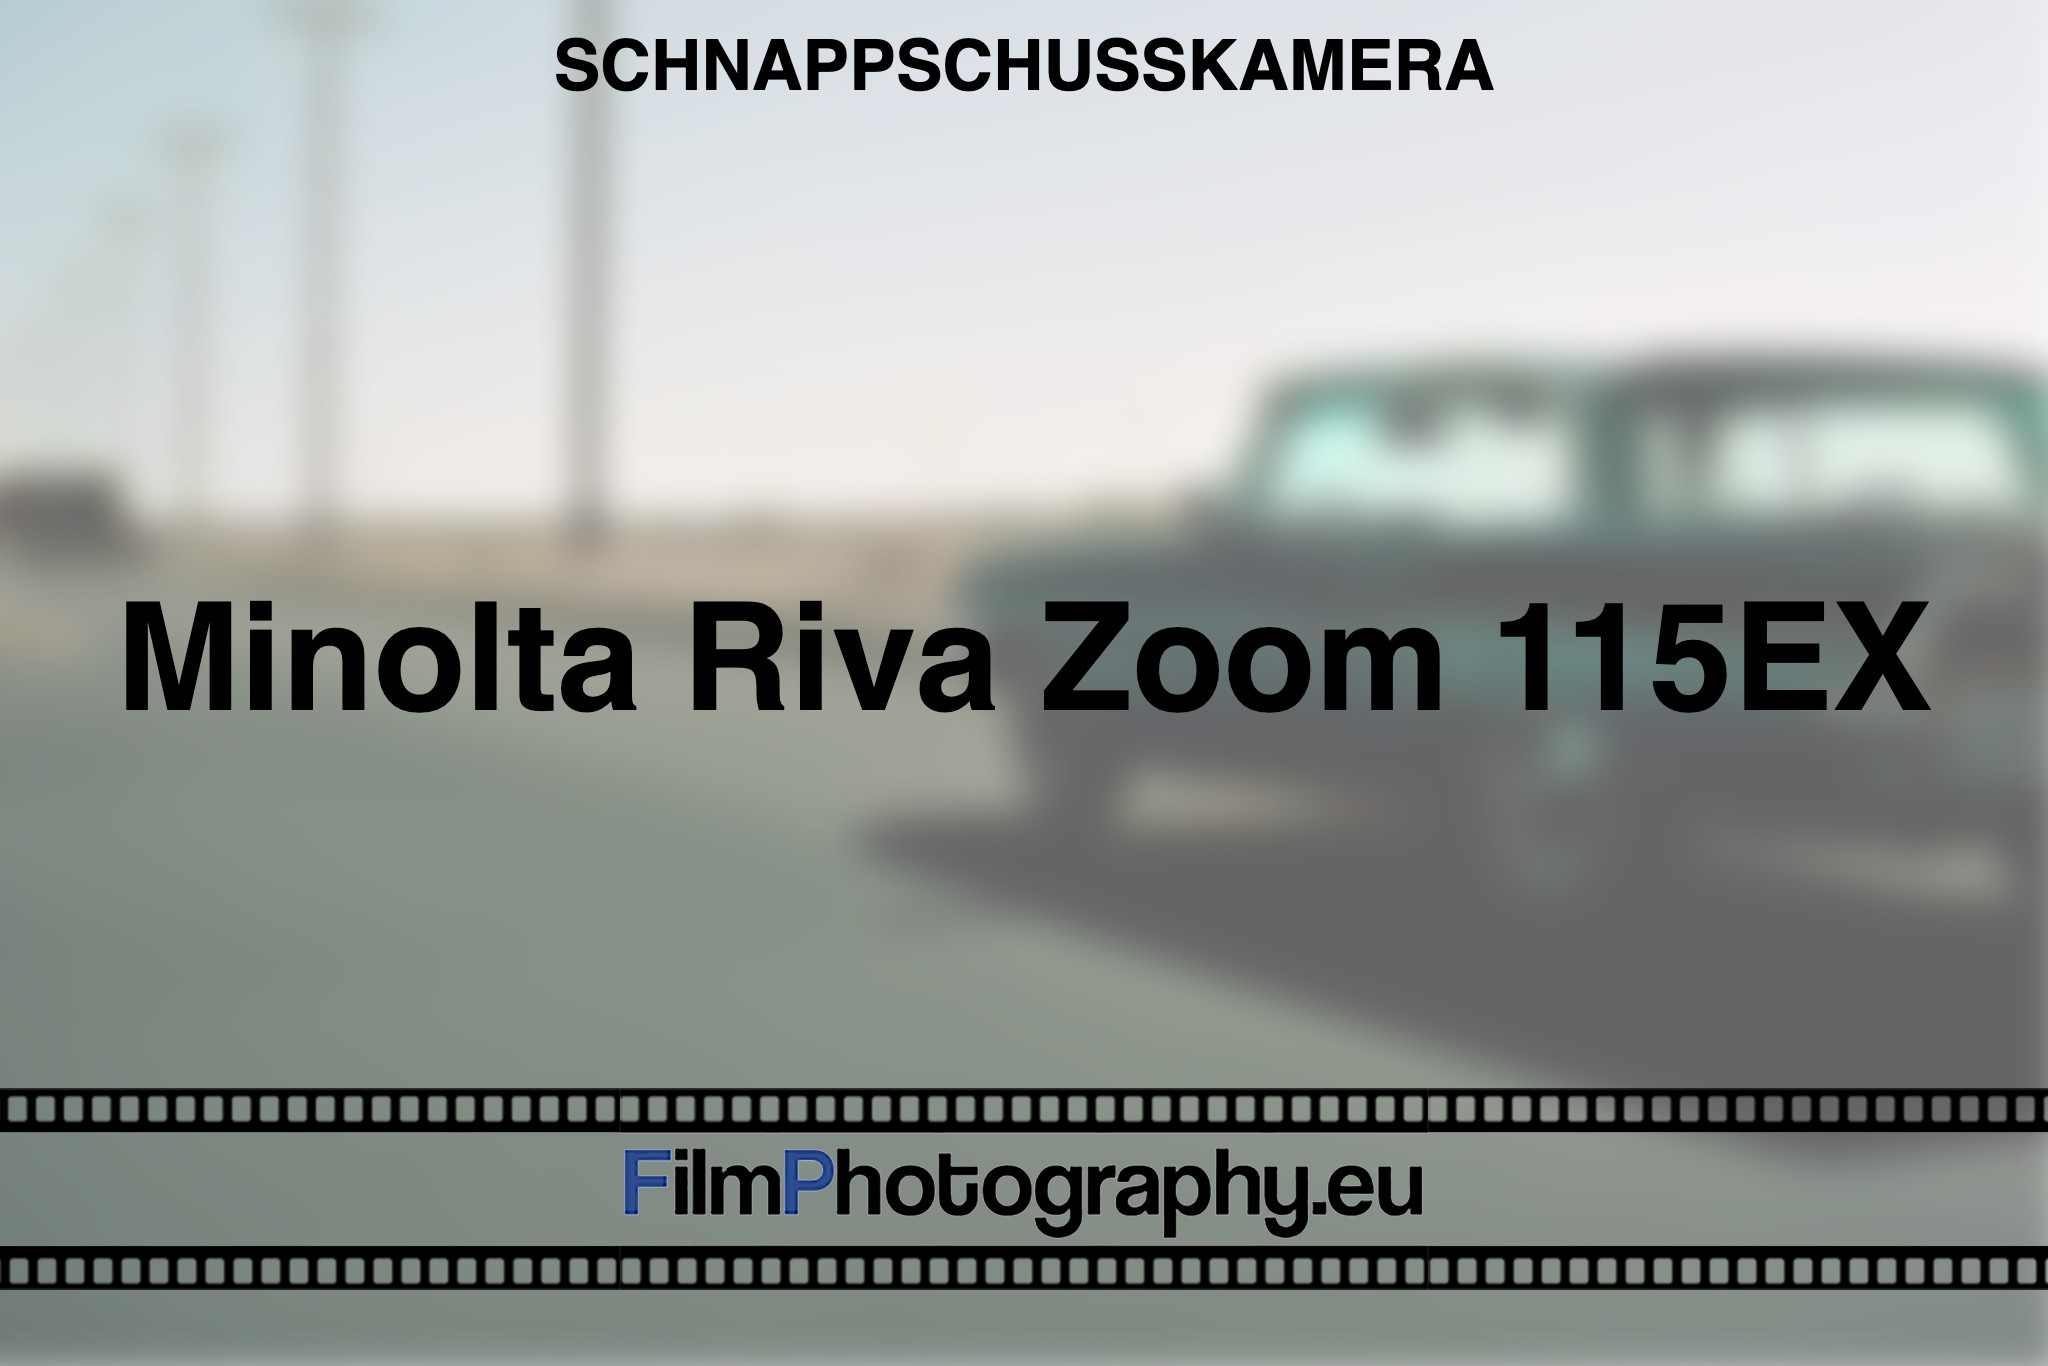 minolta-riva-zoom-115ex-schnappschusskamera-bnv